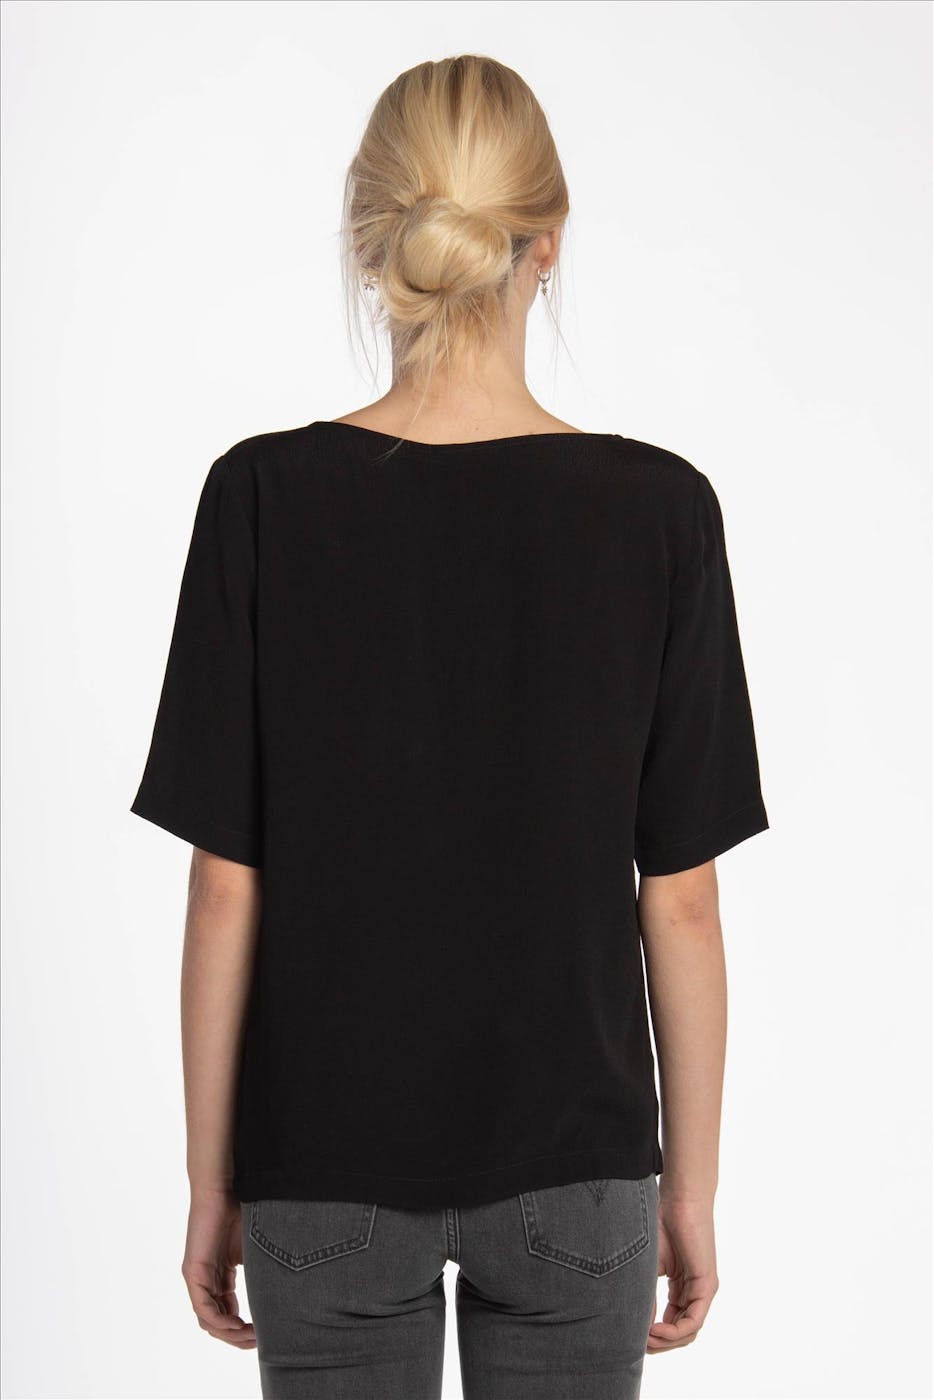 Minimum - Zwarte Elvire blouse met 1/2 mouw